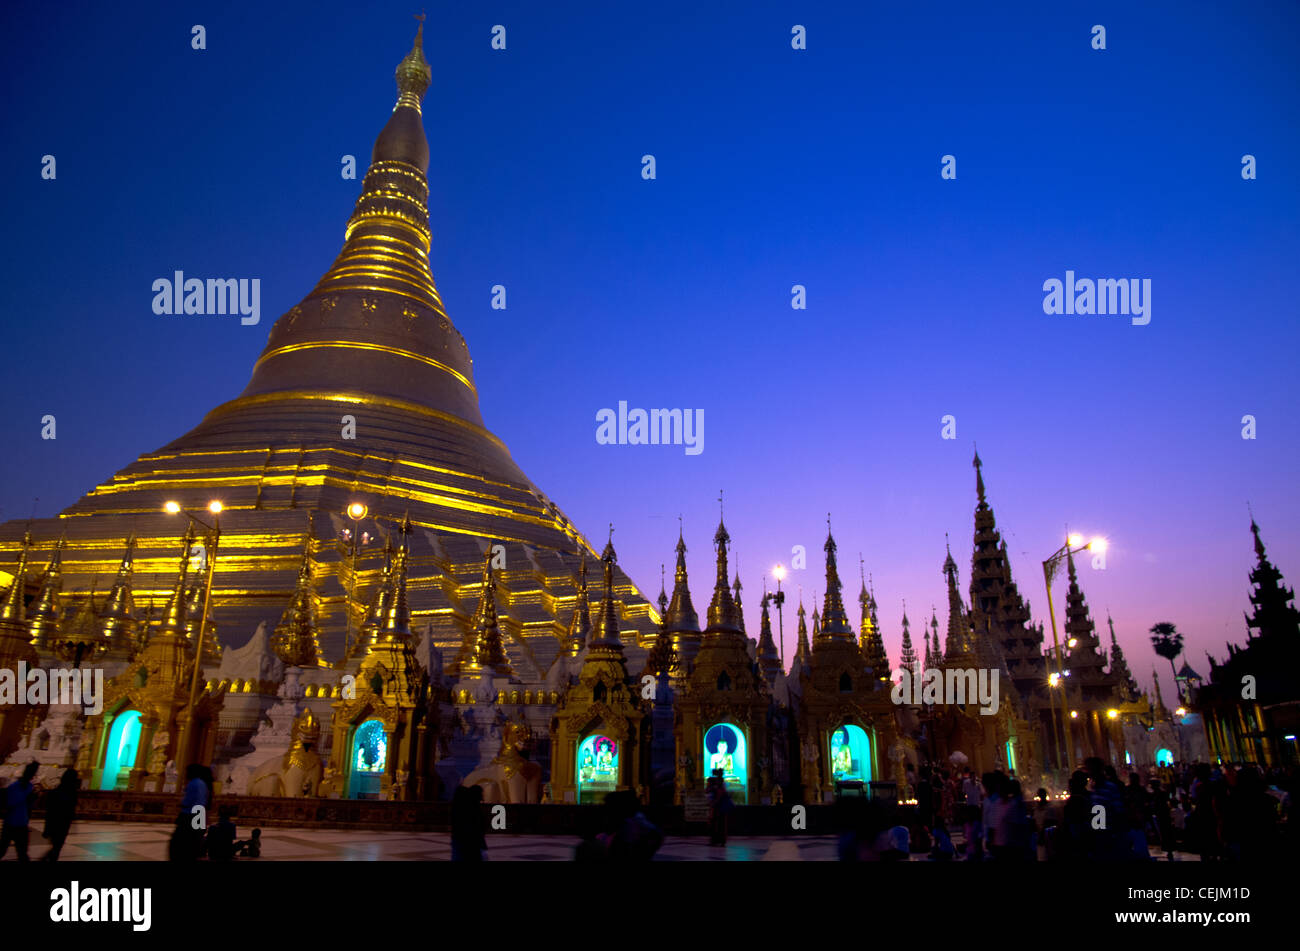 Golden Stupa in Shwedagon Pagoda at night, Rangoon, Burma Stock Photo